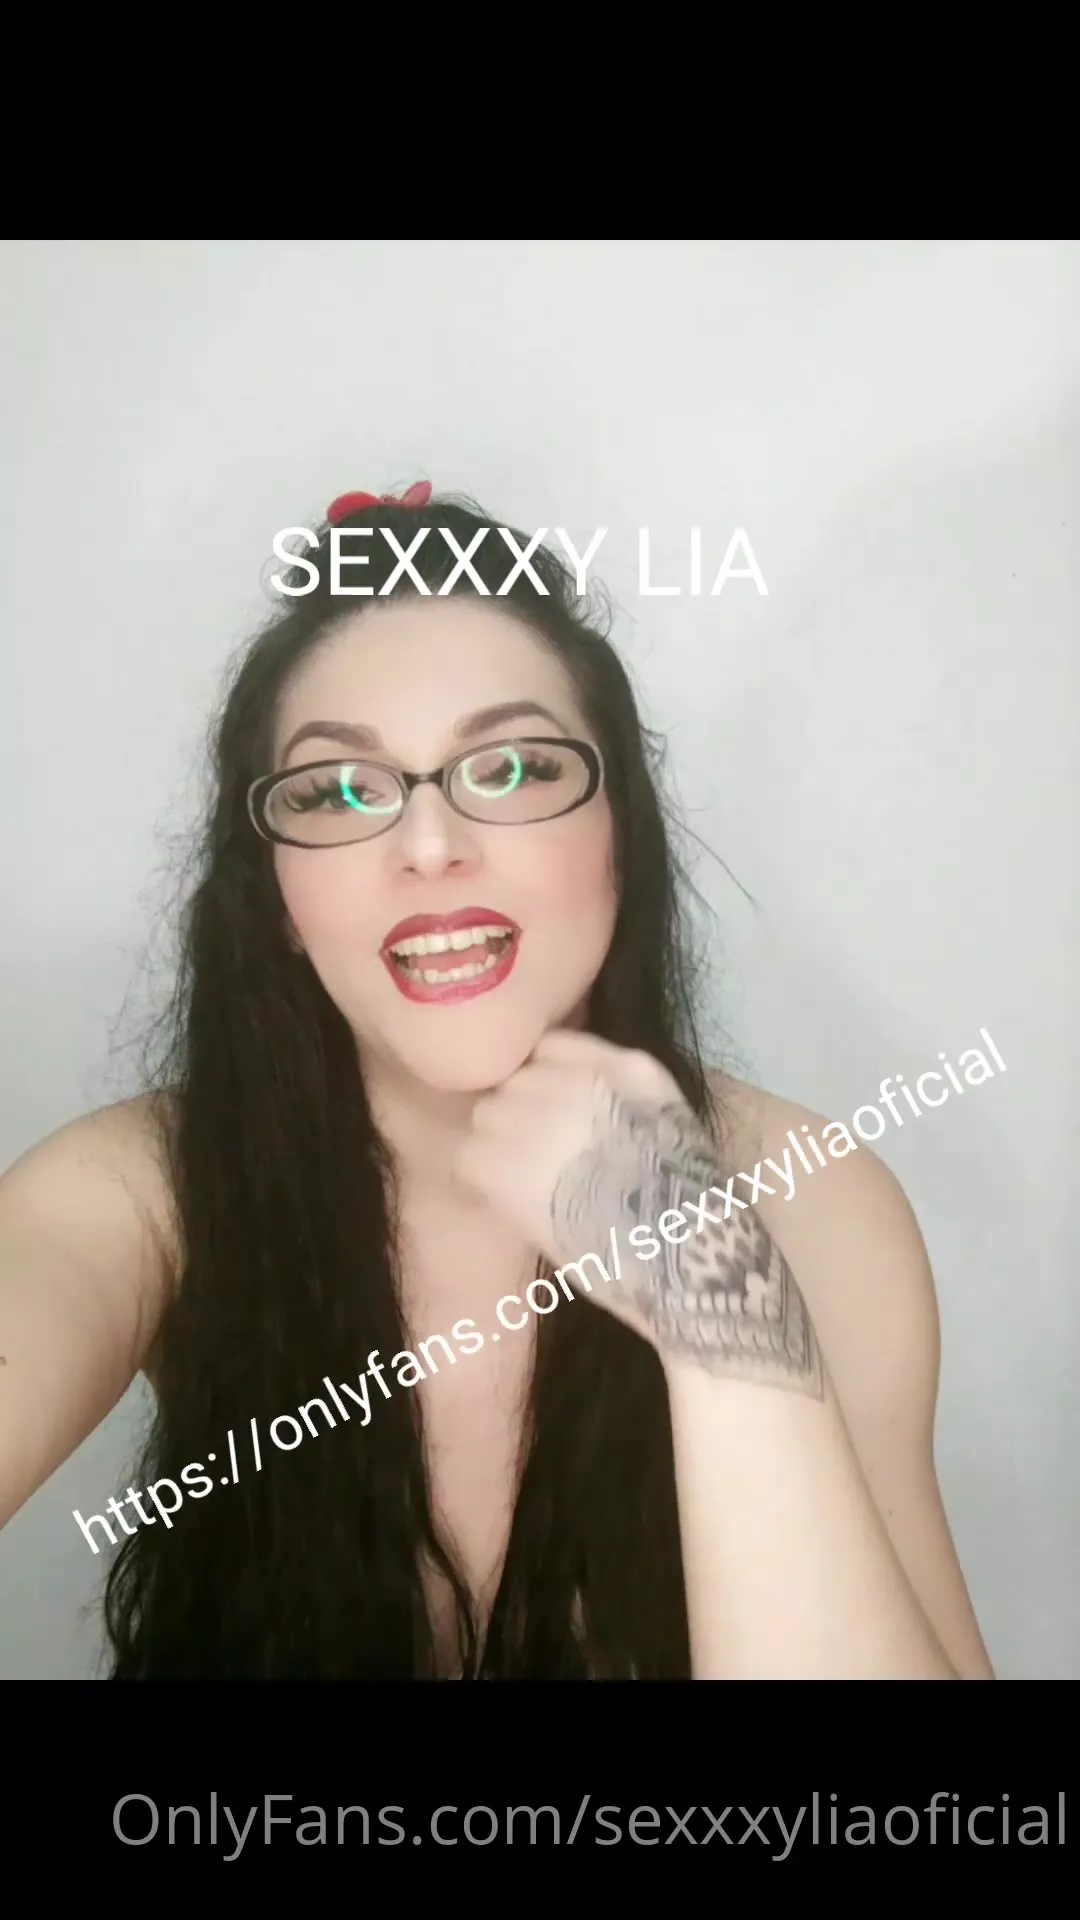 Sexxyxxxvideo - Sexxy Xxx Video | Sex Pictures Pass